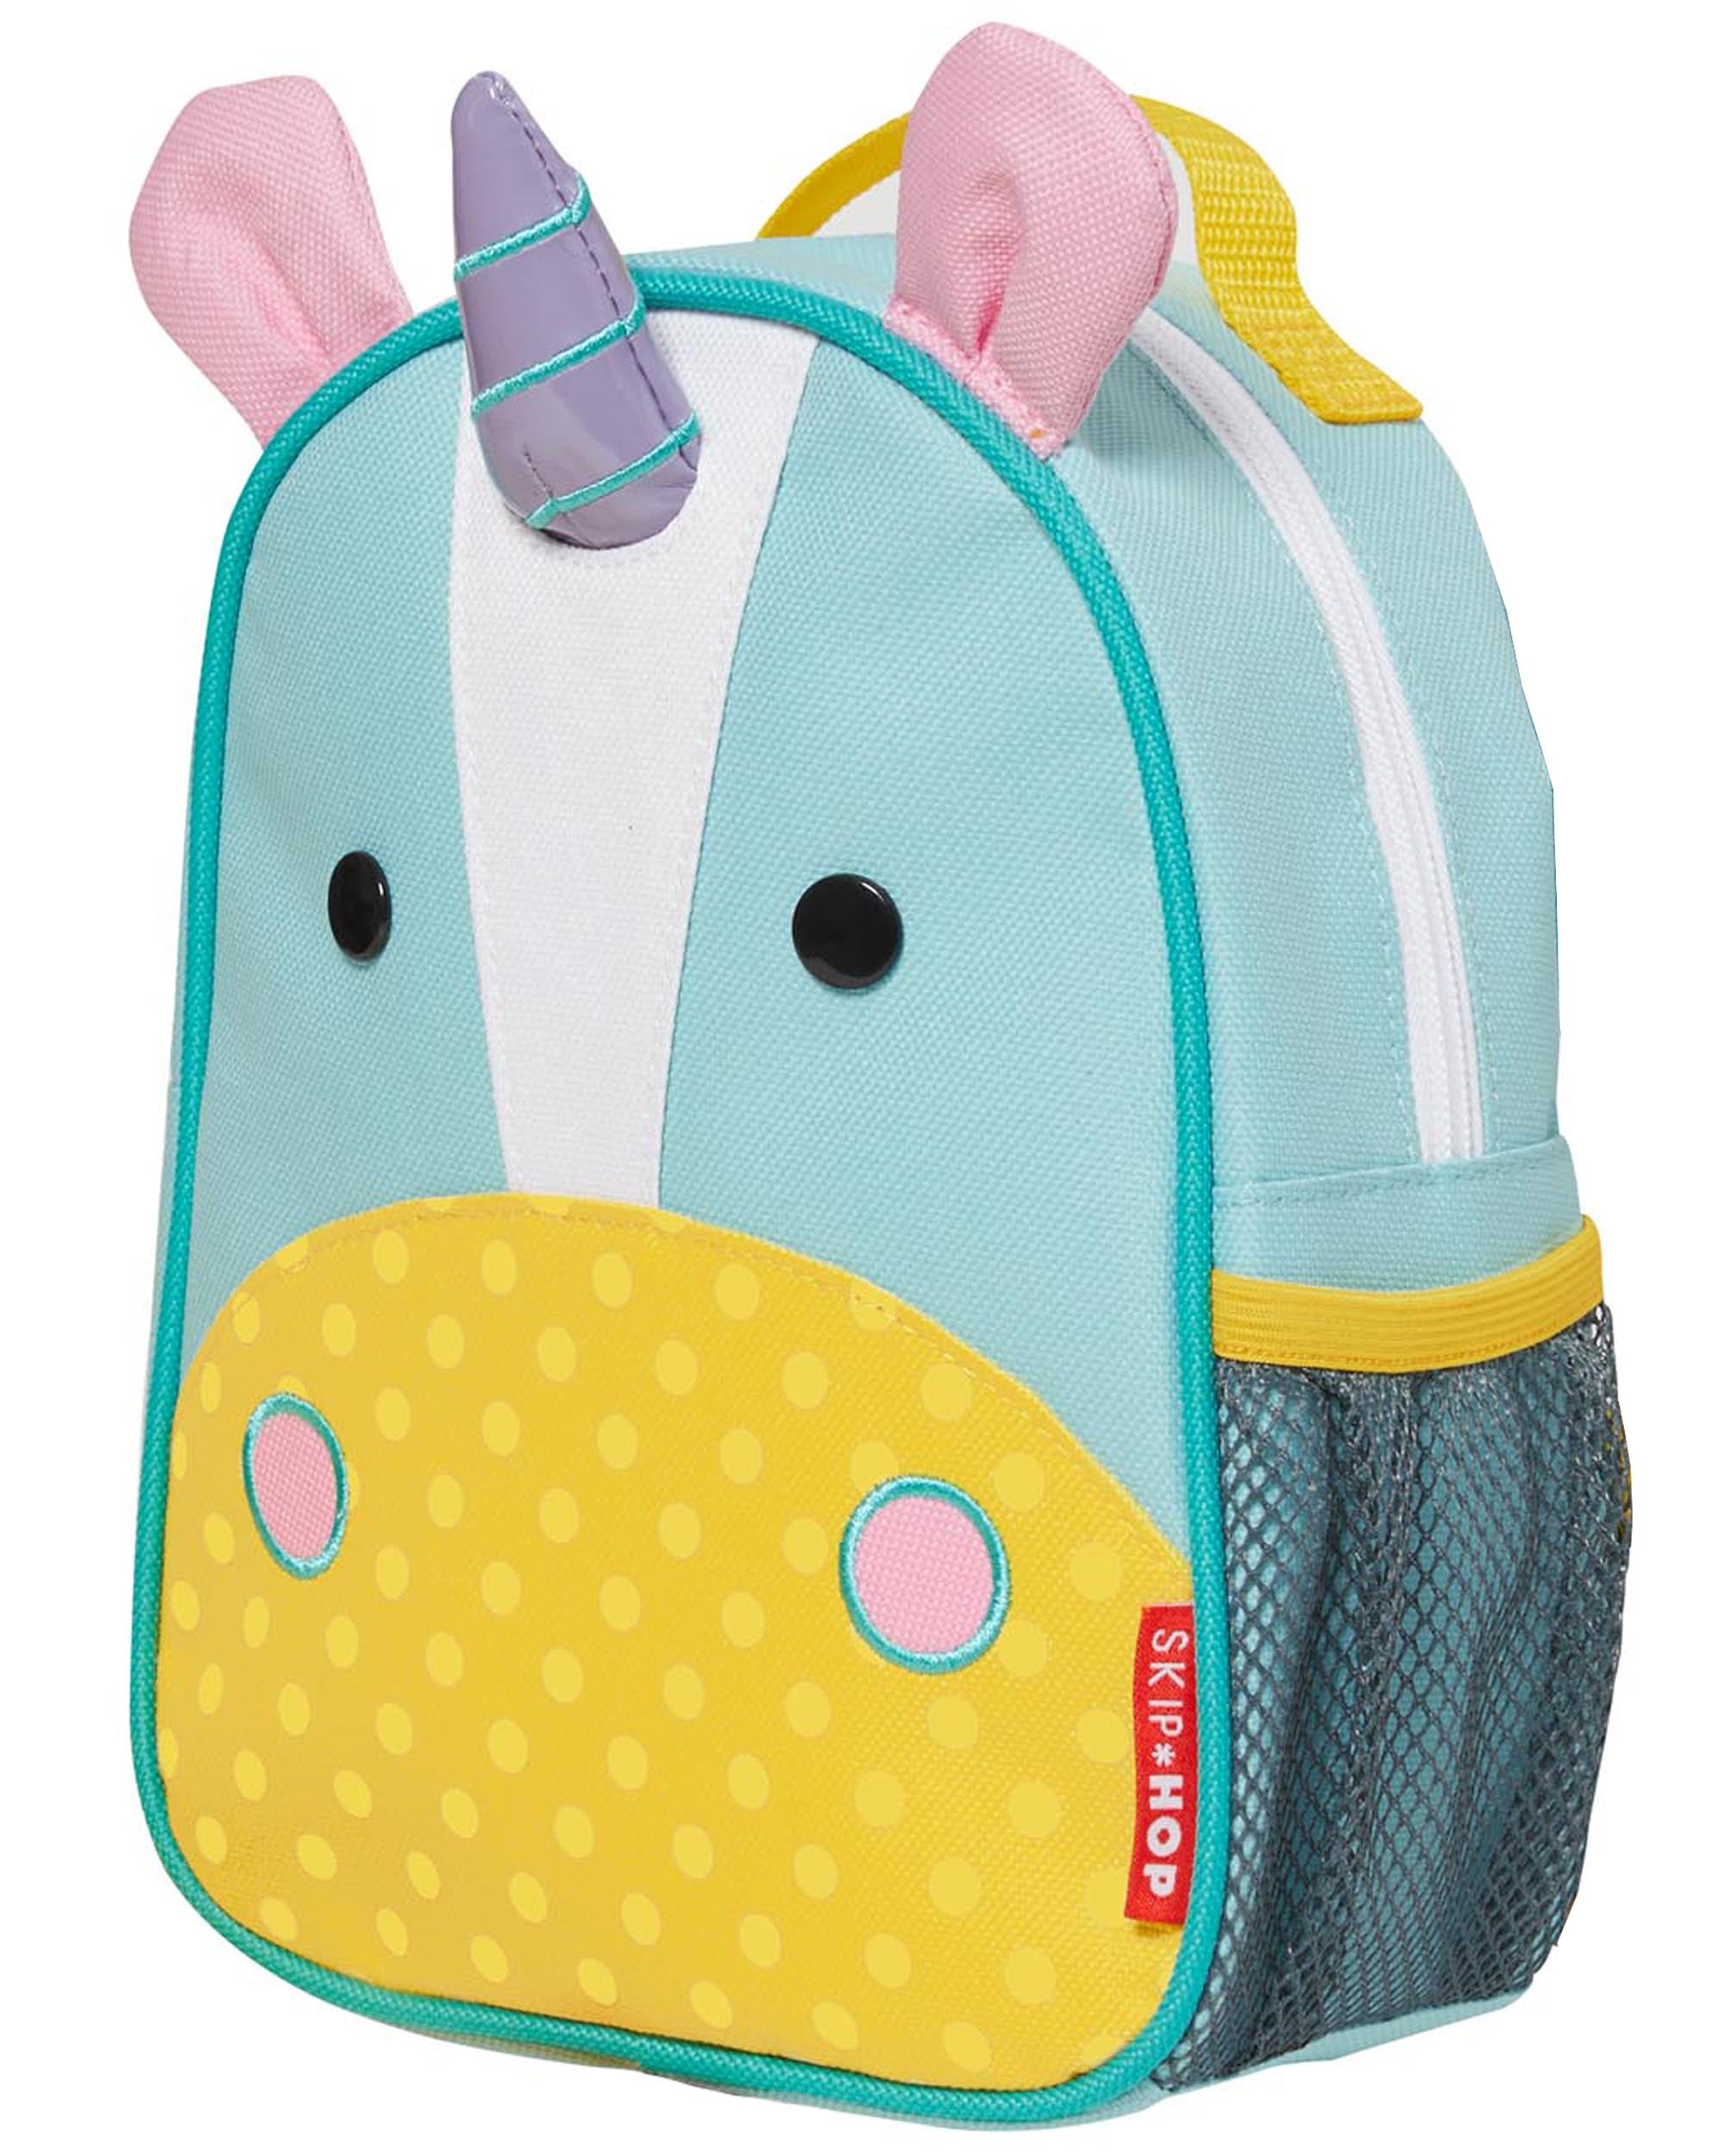 Skip Hop Zoo Mini Backpack with Reins - Unicorn